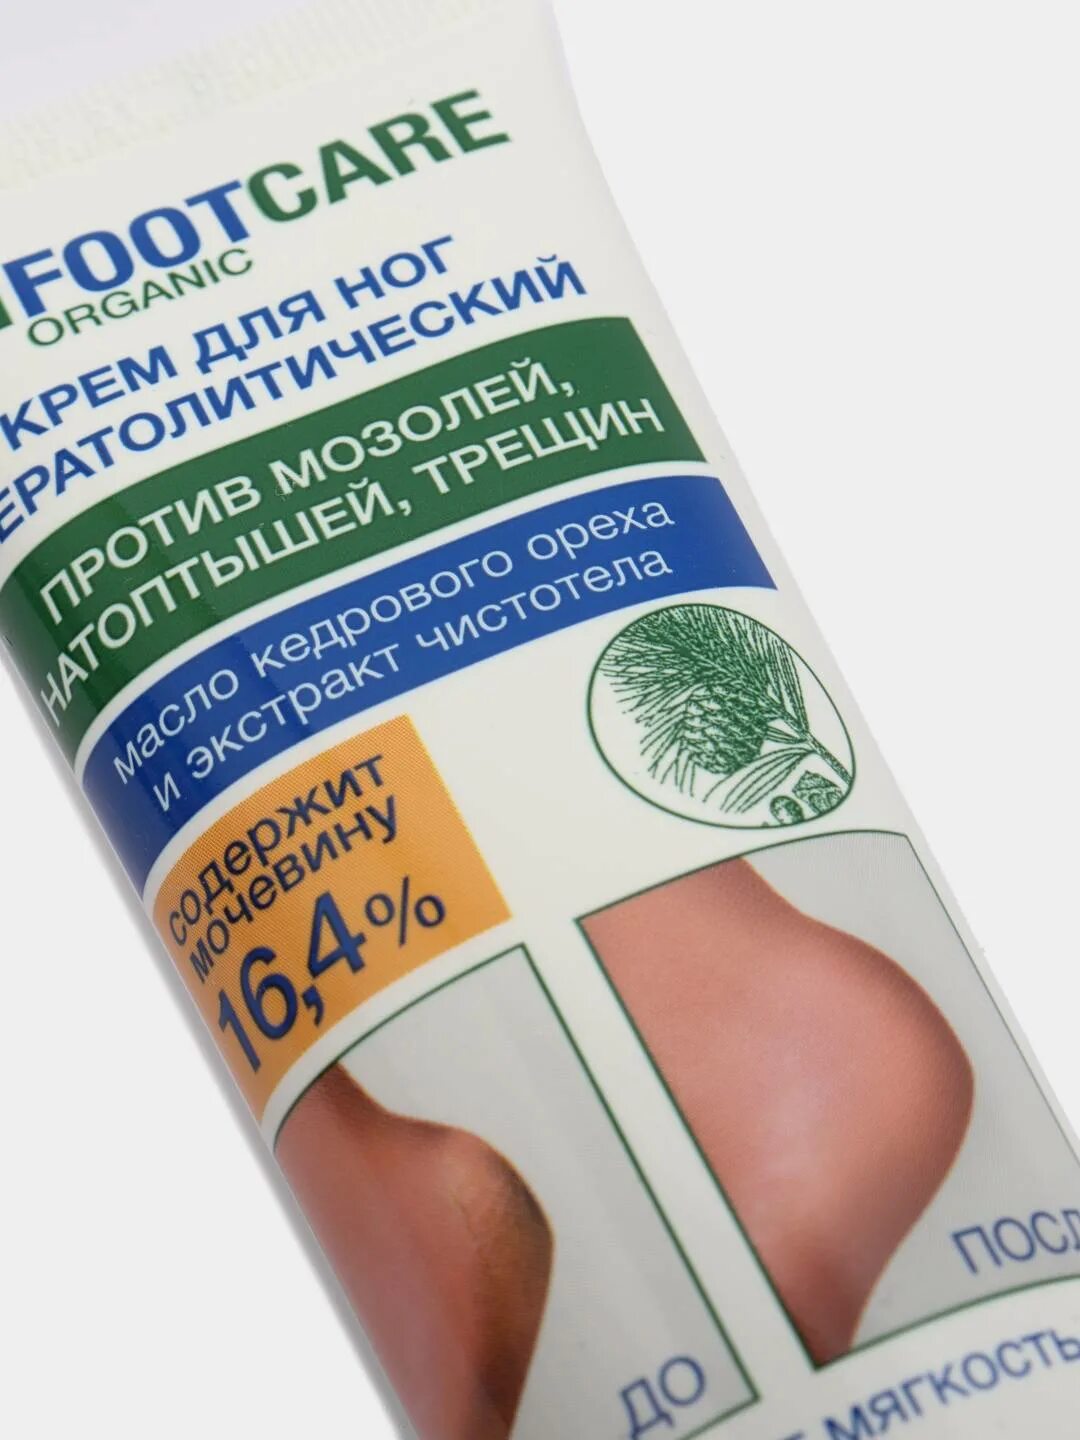 Крем против натоптышей. Floresan крем для ног кератолитический. Крем для ног Флоресан с мочевиной. Крем для ног foot Care Organic кератолитический. Кератолитический крем для ног от натоптышей.